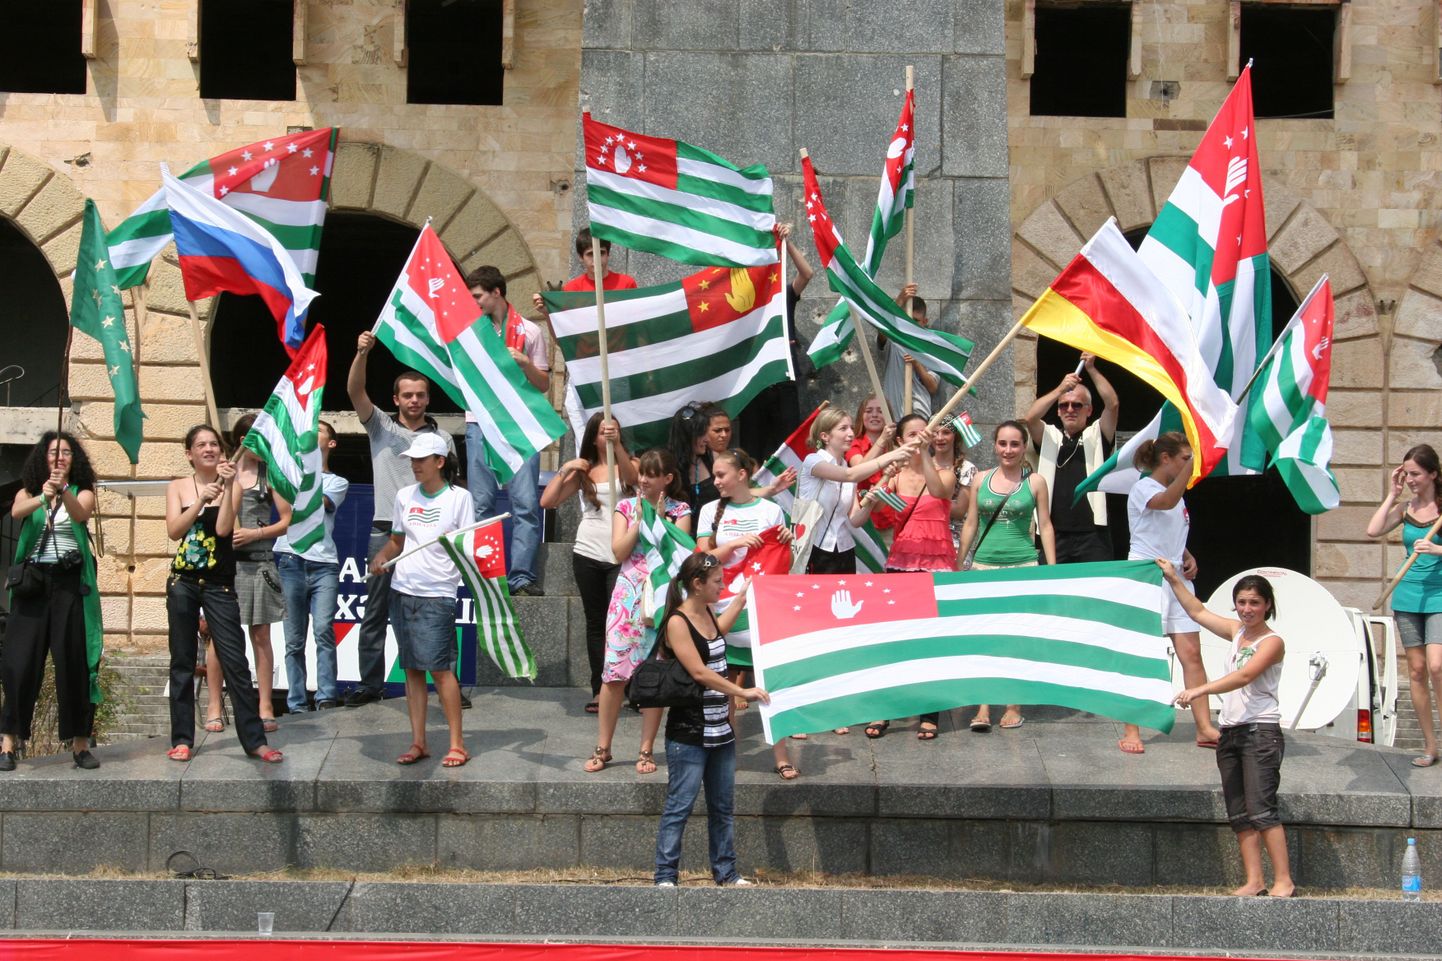 Abhaaslased lehvitamas rahvuslippe täna pärast Venemaa presidendi Dmitri Medvedevi otsust tunnustada separatistliku piirkonna iseseisvust.